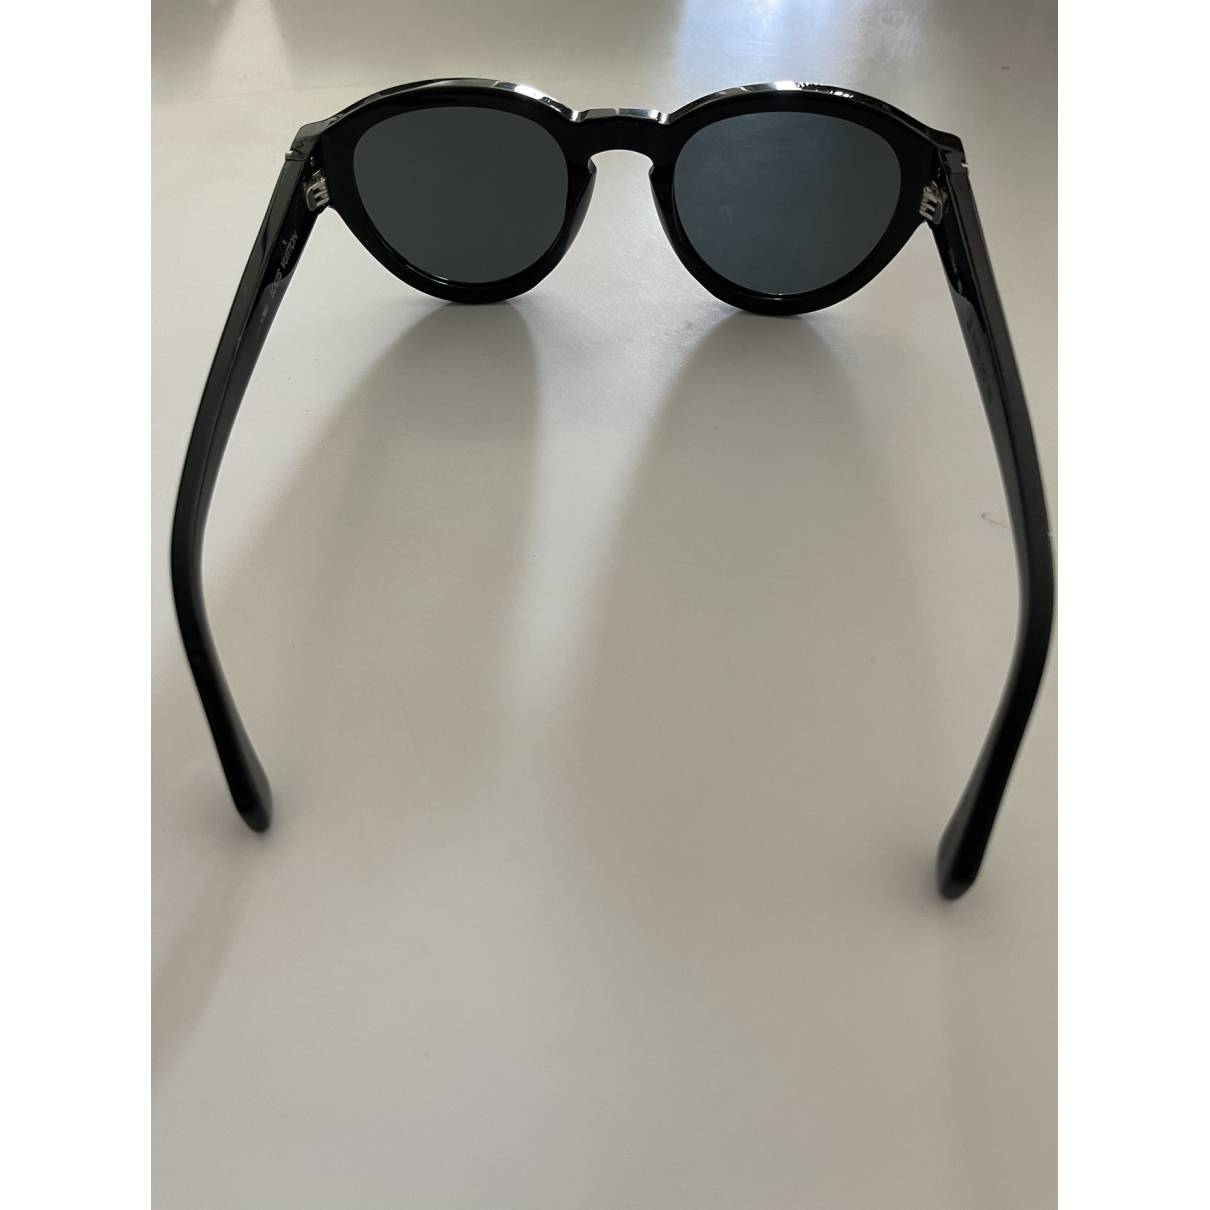 Sunglasses Louis Vuitton Black in Plastic - 18471796